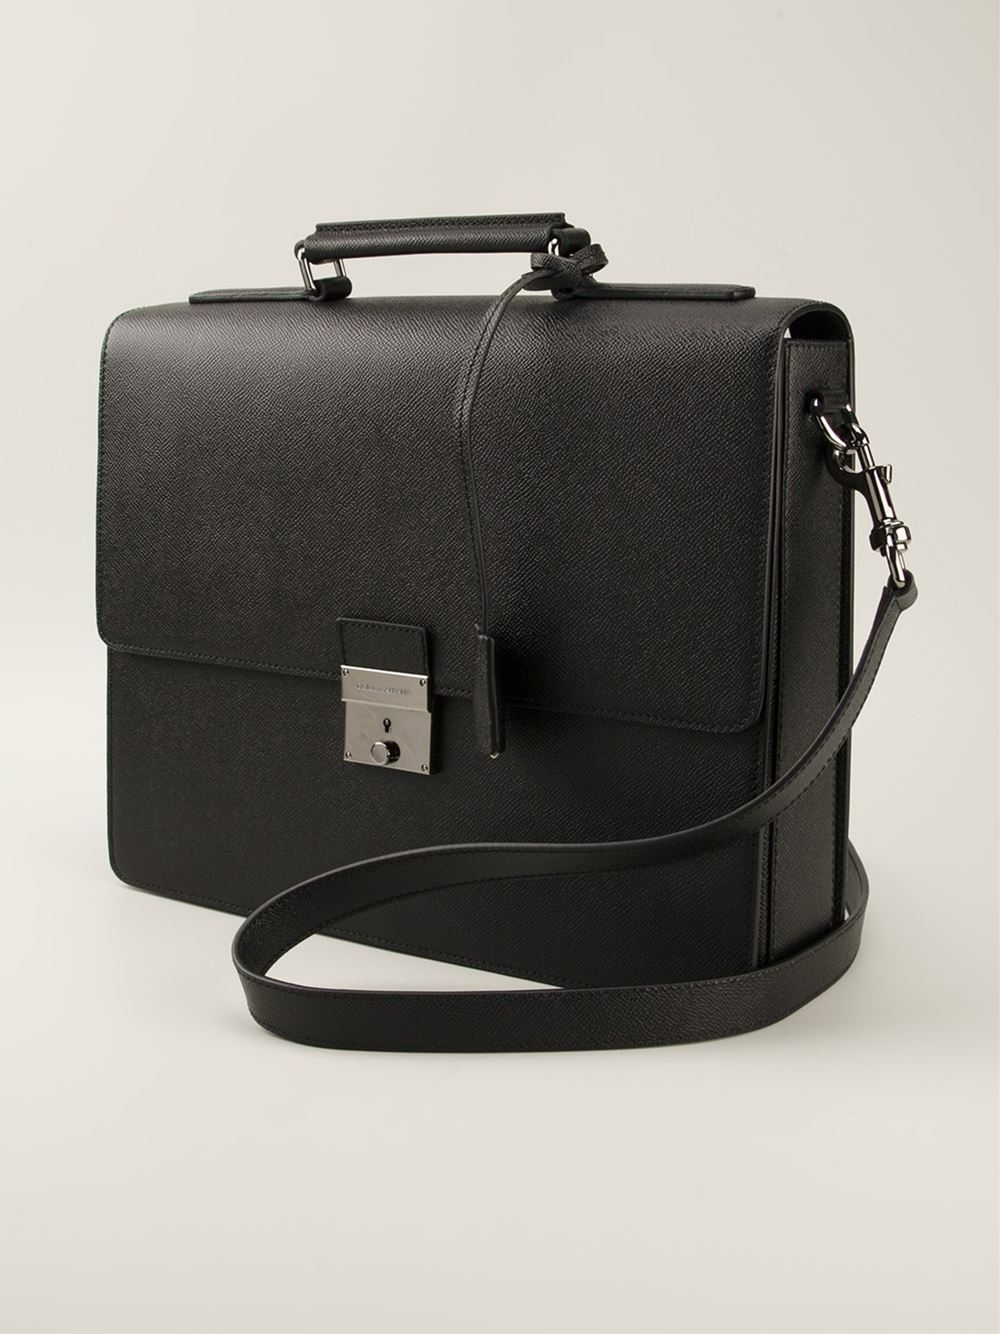 Dolce & Gabbana Dauphine Briefcase in Black for Men - Lyst